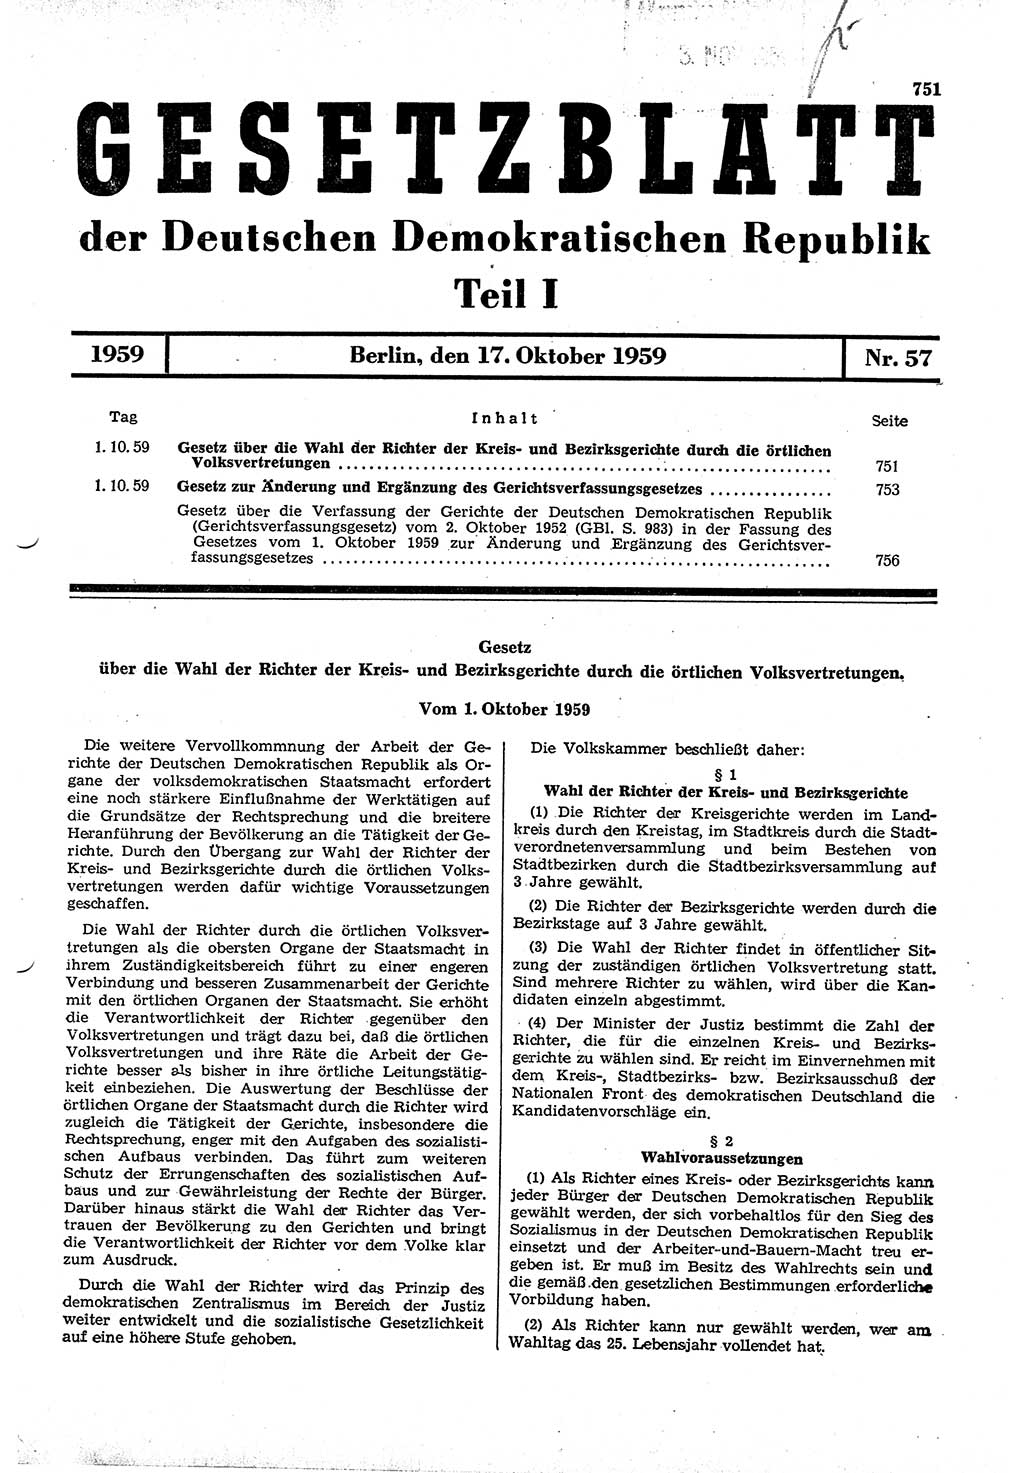 Gesetzblatt (GBl.) der Deutschen Demokratischen Republik (DDR) Teil Ⅰ 1959, Seite 751 (GBl. DDR Ⅰ 1959, S. 751)